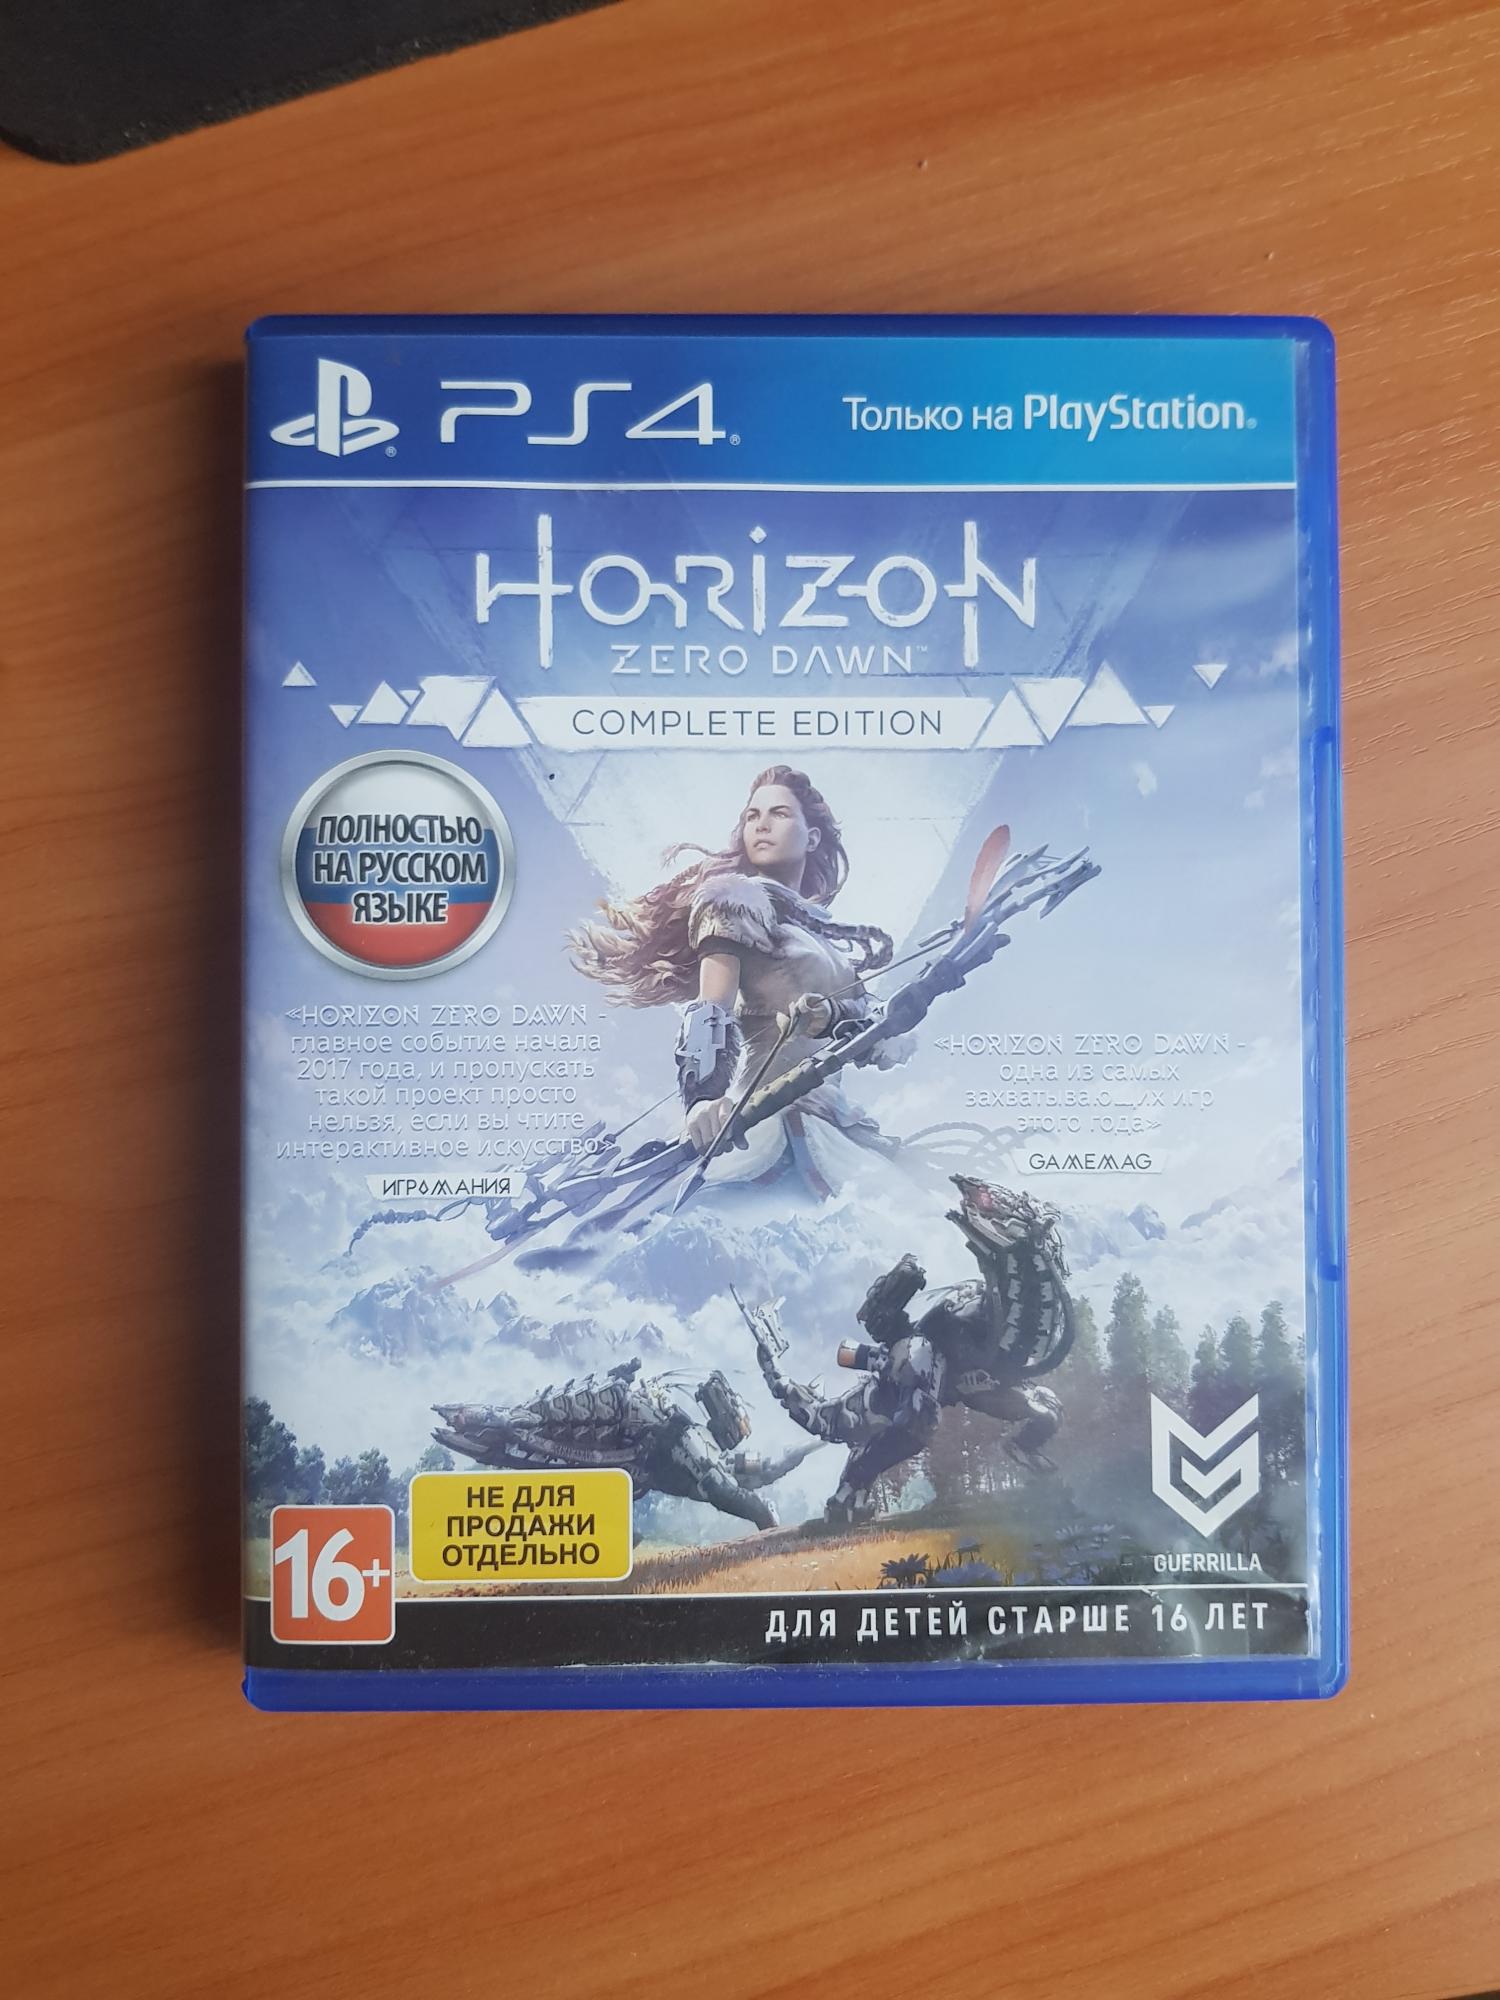 Complete edition game. Horizon Zero Dawn диск пс4. Игра Horizon Zero Dawn (ps4). Хорайзон 2 диск. Horizon Zero Dawn complete Edition ps4.